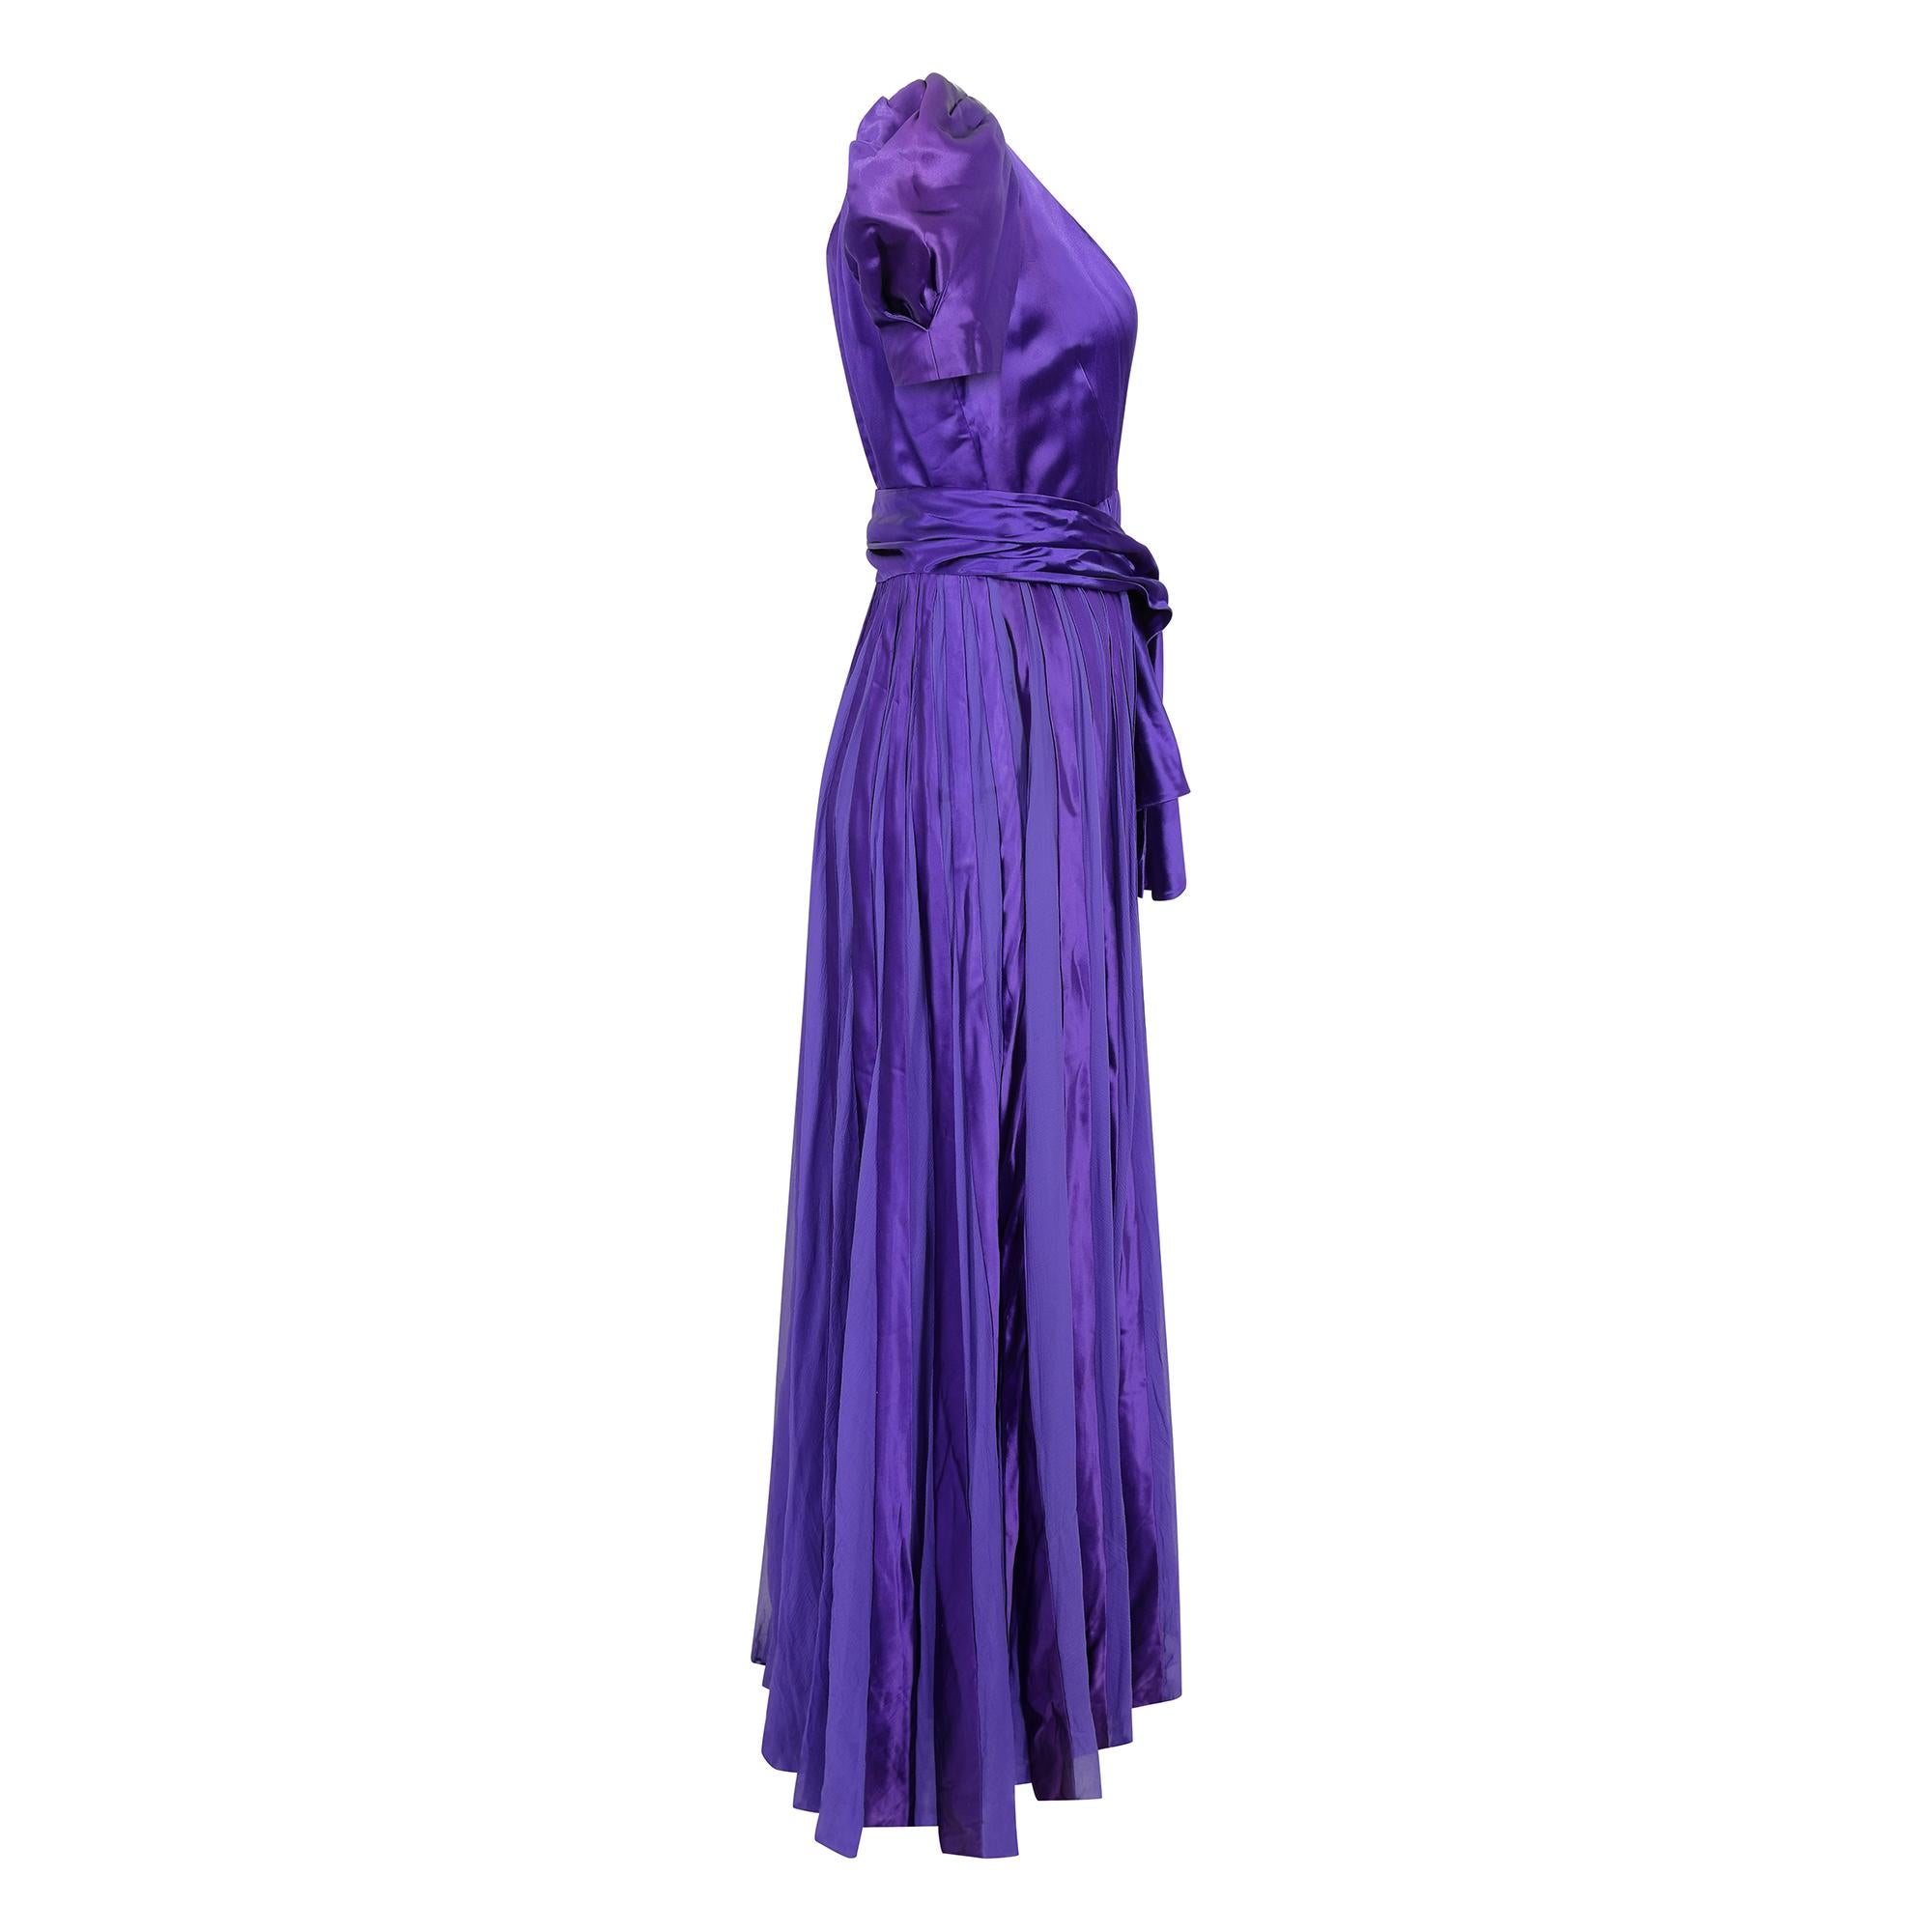 Originales lila Kleid aus Satin und Chiffon aus den späten 1930er oder frühen 1940er Jahren mit passender Schärpe. Dieses wunderschöne, nicht etikettierte Haute Couture Kleid ist von hervorragender Qualität und Konstruktion und befindet sich in